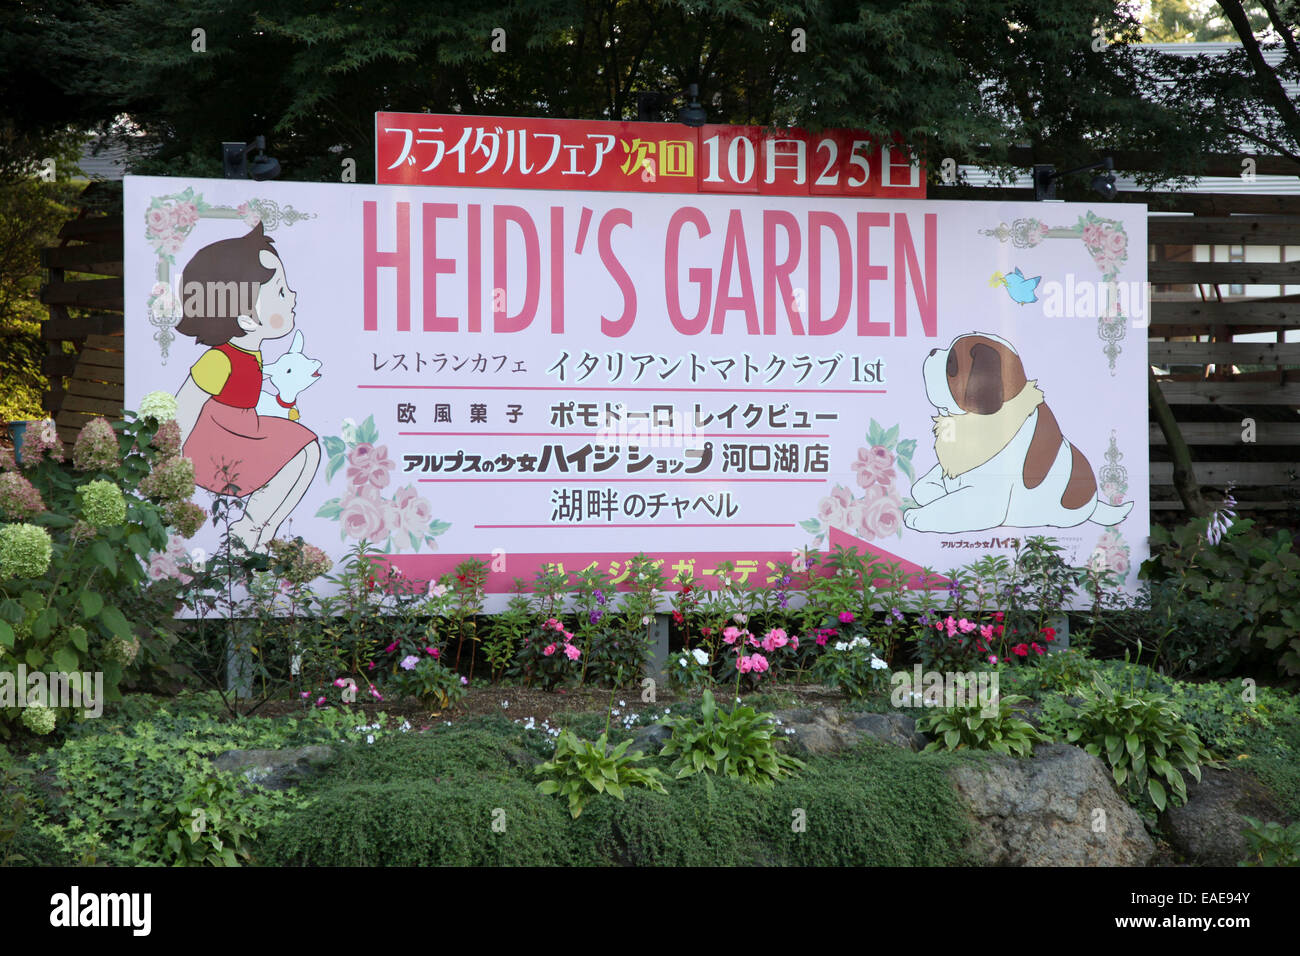 Une publicité d'un restaurant, le "Heidi's Garden' est représenté en japonais Kawaguchiko, le 29 septembre 2014. Photo : Friso Gentsch/dpa Banque D'Images